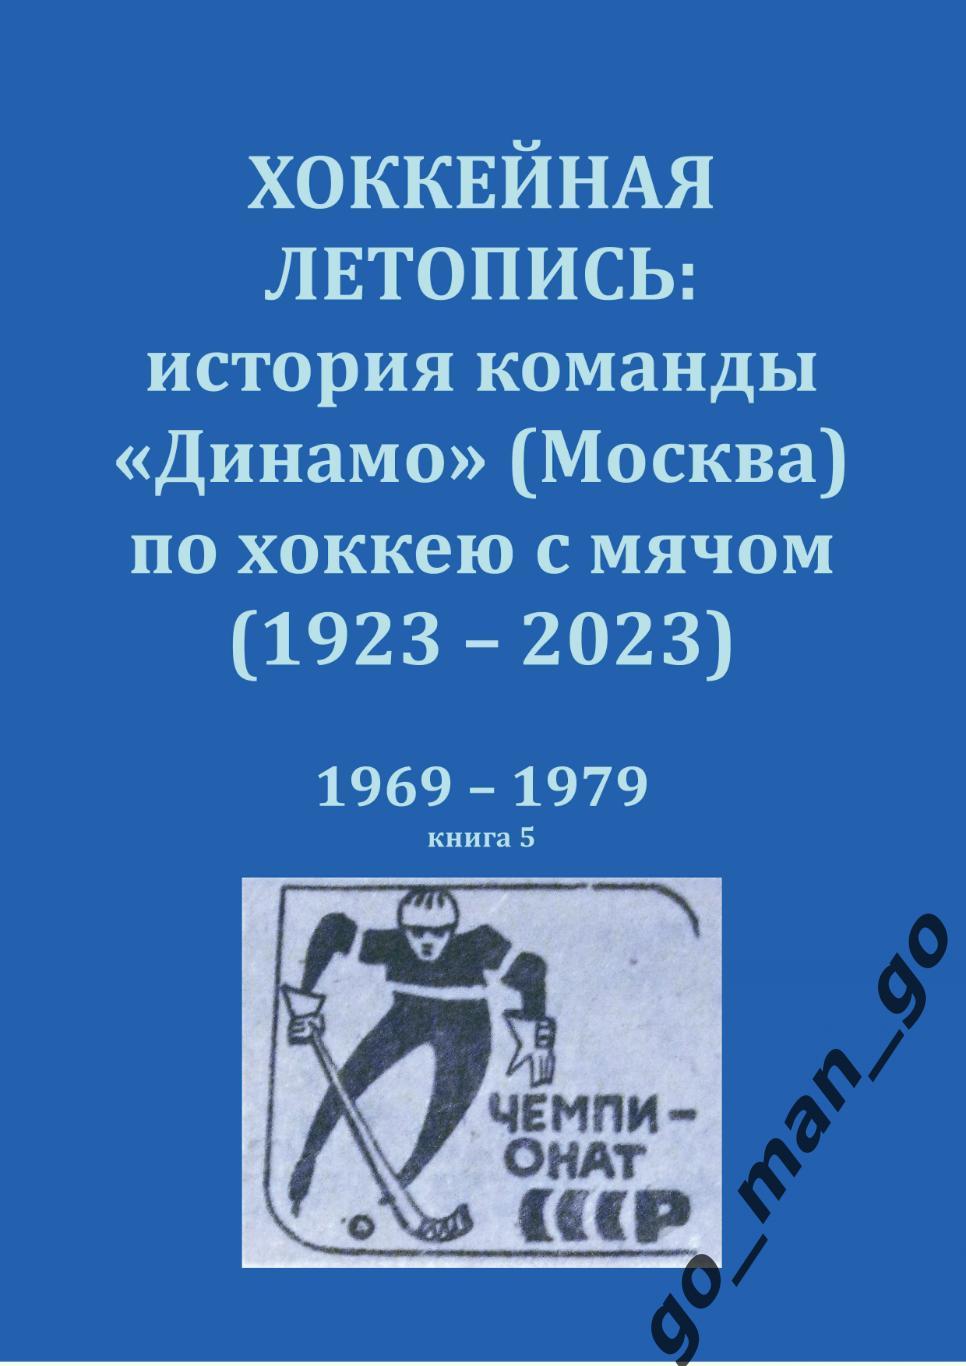 Хоккейная летопись: история команды Динамо (Москва) по хоккею с мячом. 1969-1979